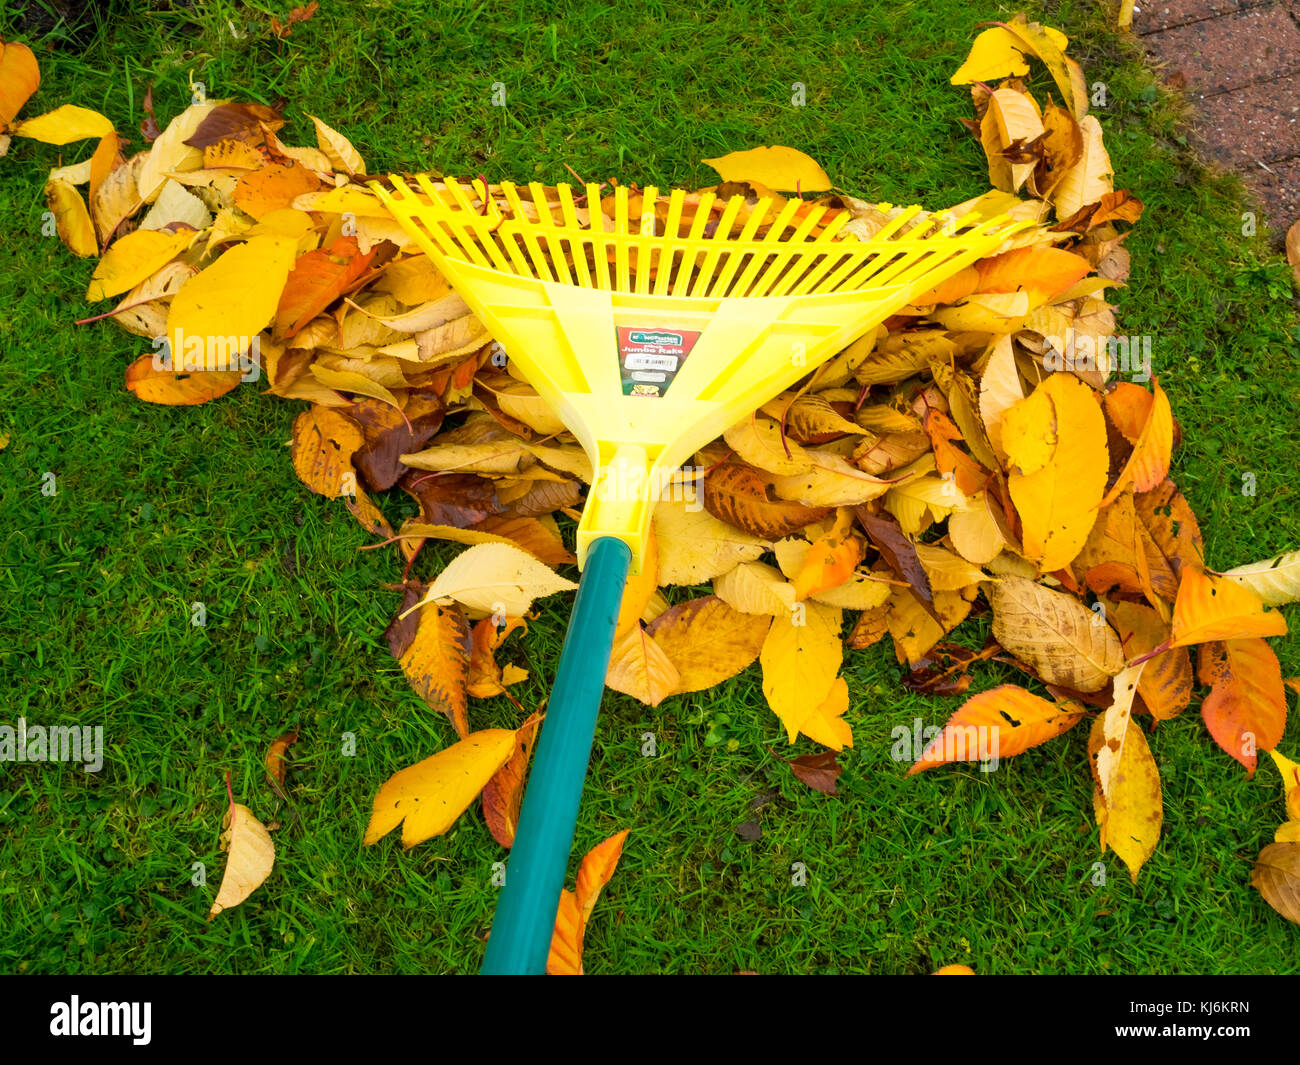 Herbst Chore für Gärtner, Harken fallende Blätter, die in Tüten, die Blattform eine nützliche Garten Dünger werden können Stockfoto